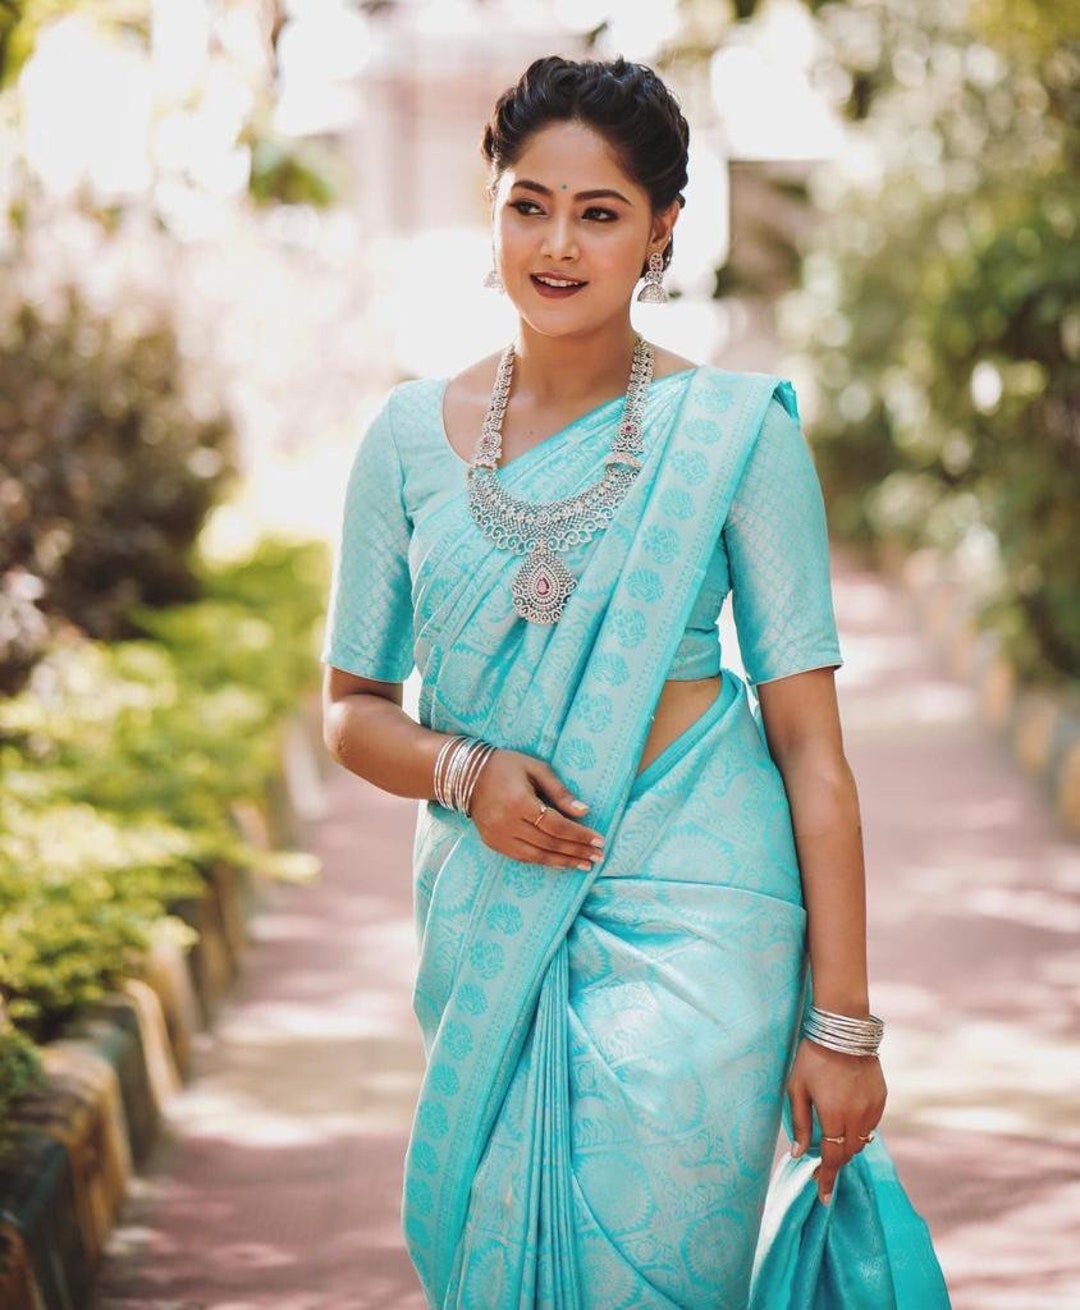 Discover more than 80 sky blue colour saree images